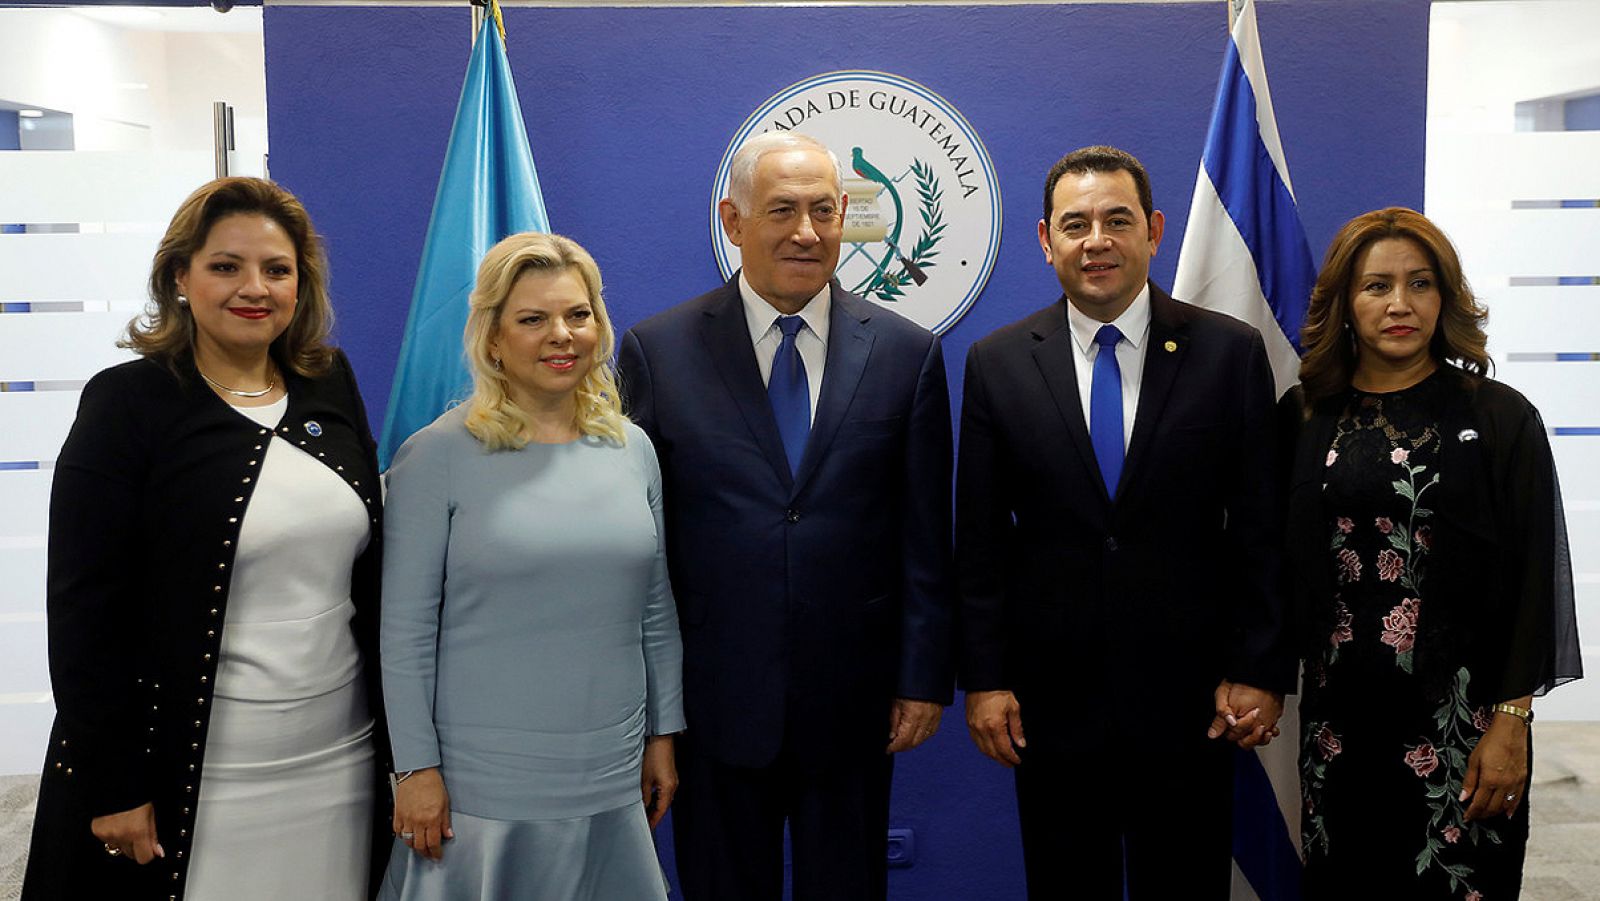 Inauguración de la embajada de Guatemala en Jerusalén. El presidente de Guatemala, Jimmy Morales, y su esposa Hilda Patricia Marroquin (a la derecha), junto al primer ministro israelí, Benjamin Netanyahu, y su esposa Sara (en el centro). A la izquier